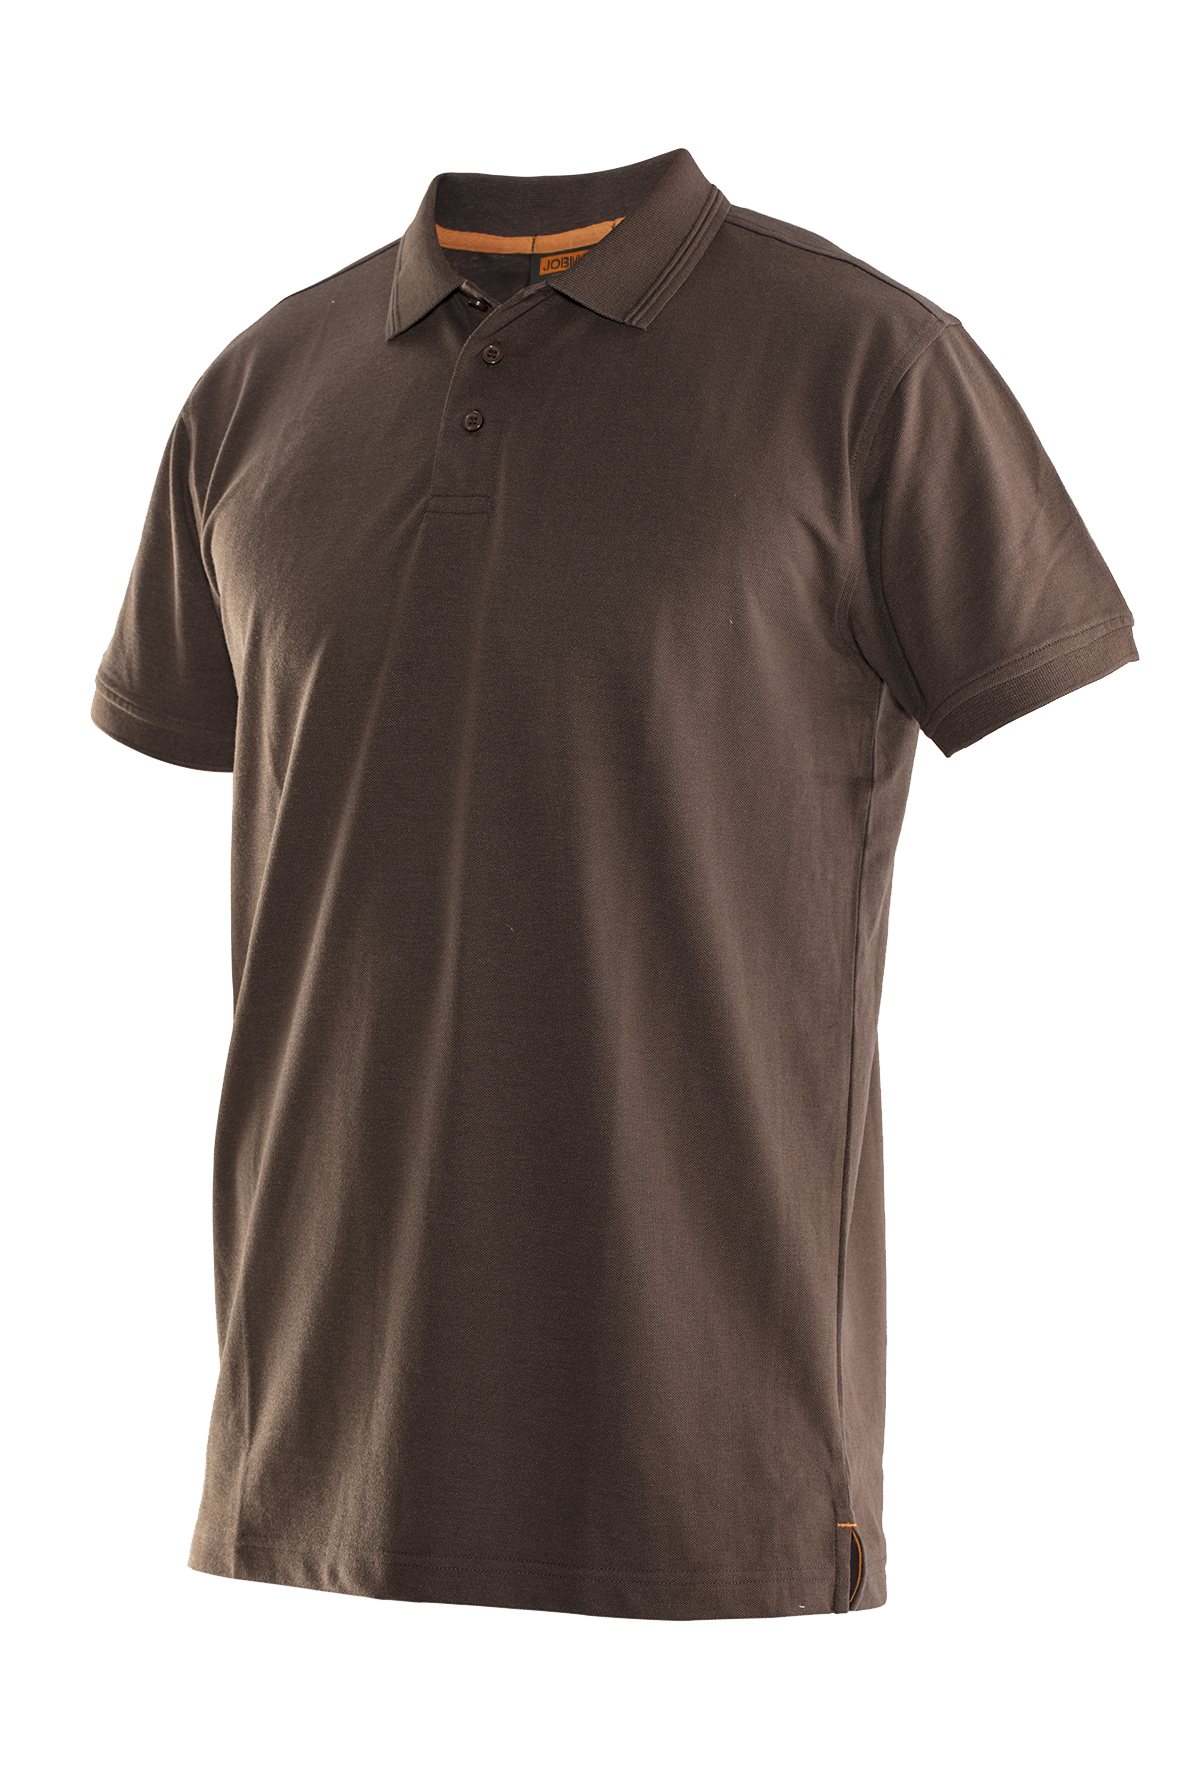 5564 T-shirt polo XL marron